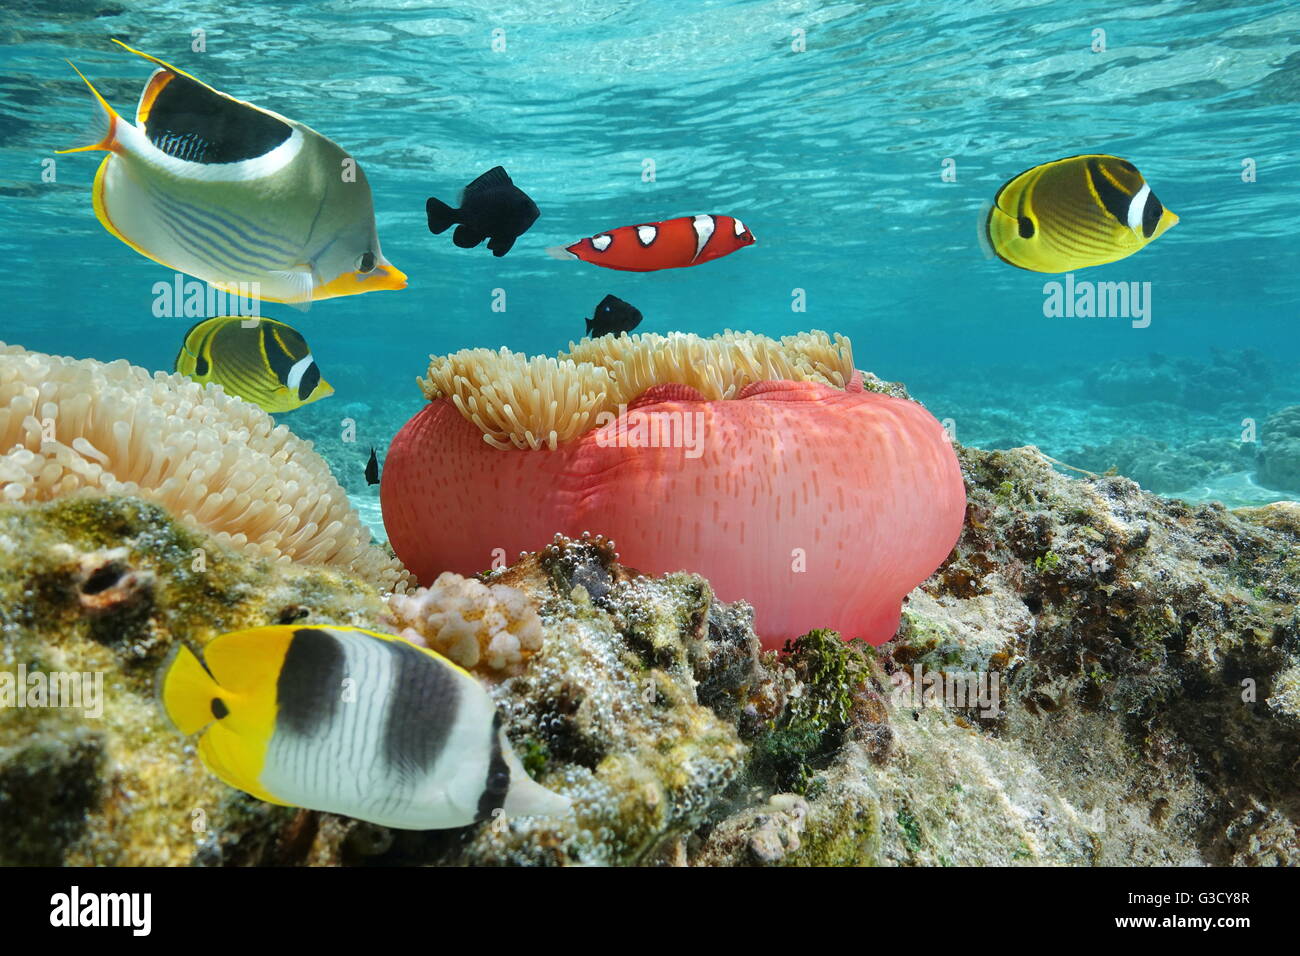 Pesci colorati con un anemone marittimo sott'acqua in laguna, oceano pacifico, Polinesia Francese Foto Stock